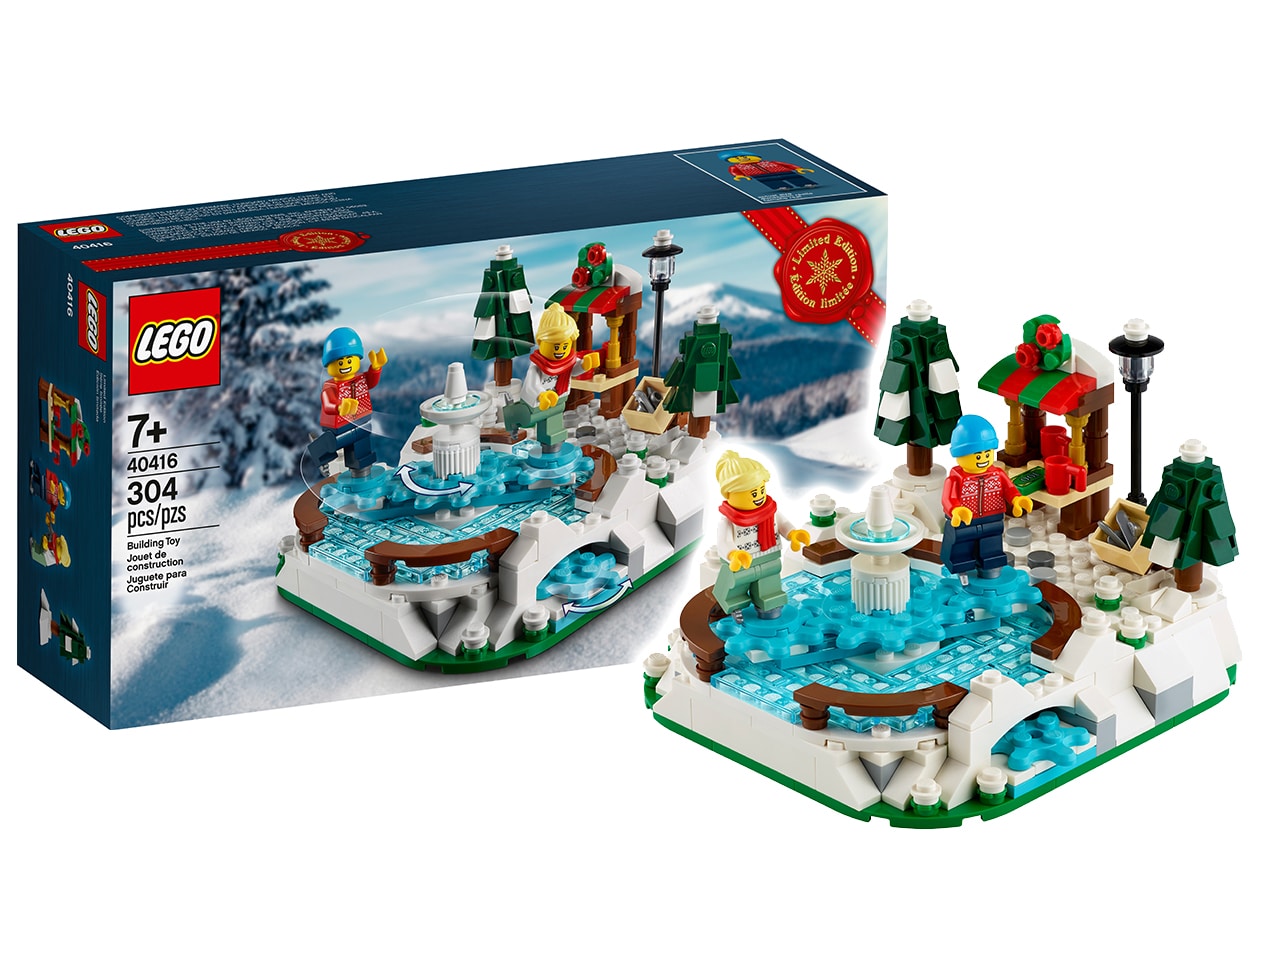 LEGO 40416 Eislaufplatz: Unsere Einkaufstipps für die Gratisbeilage